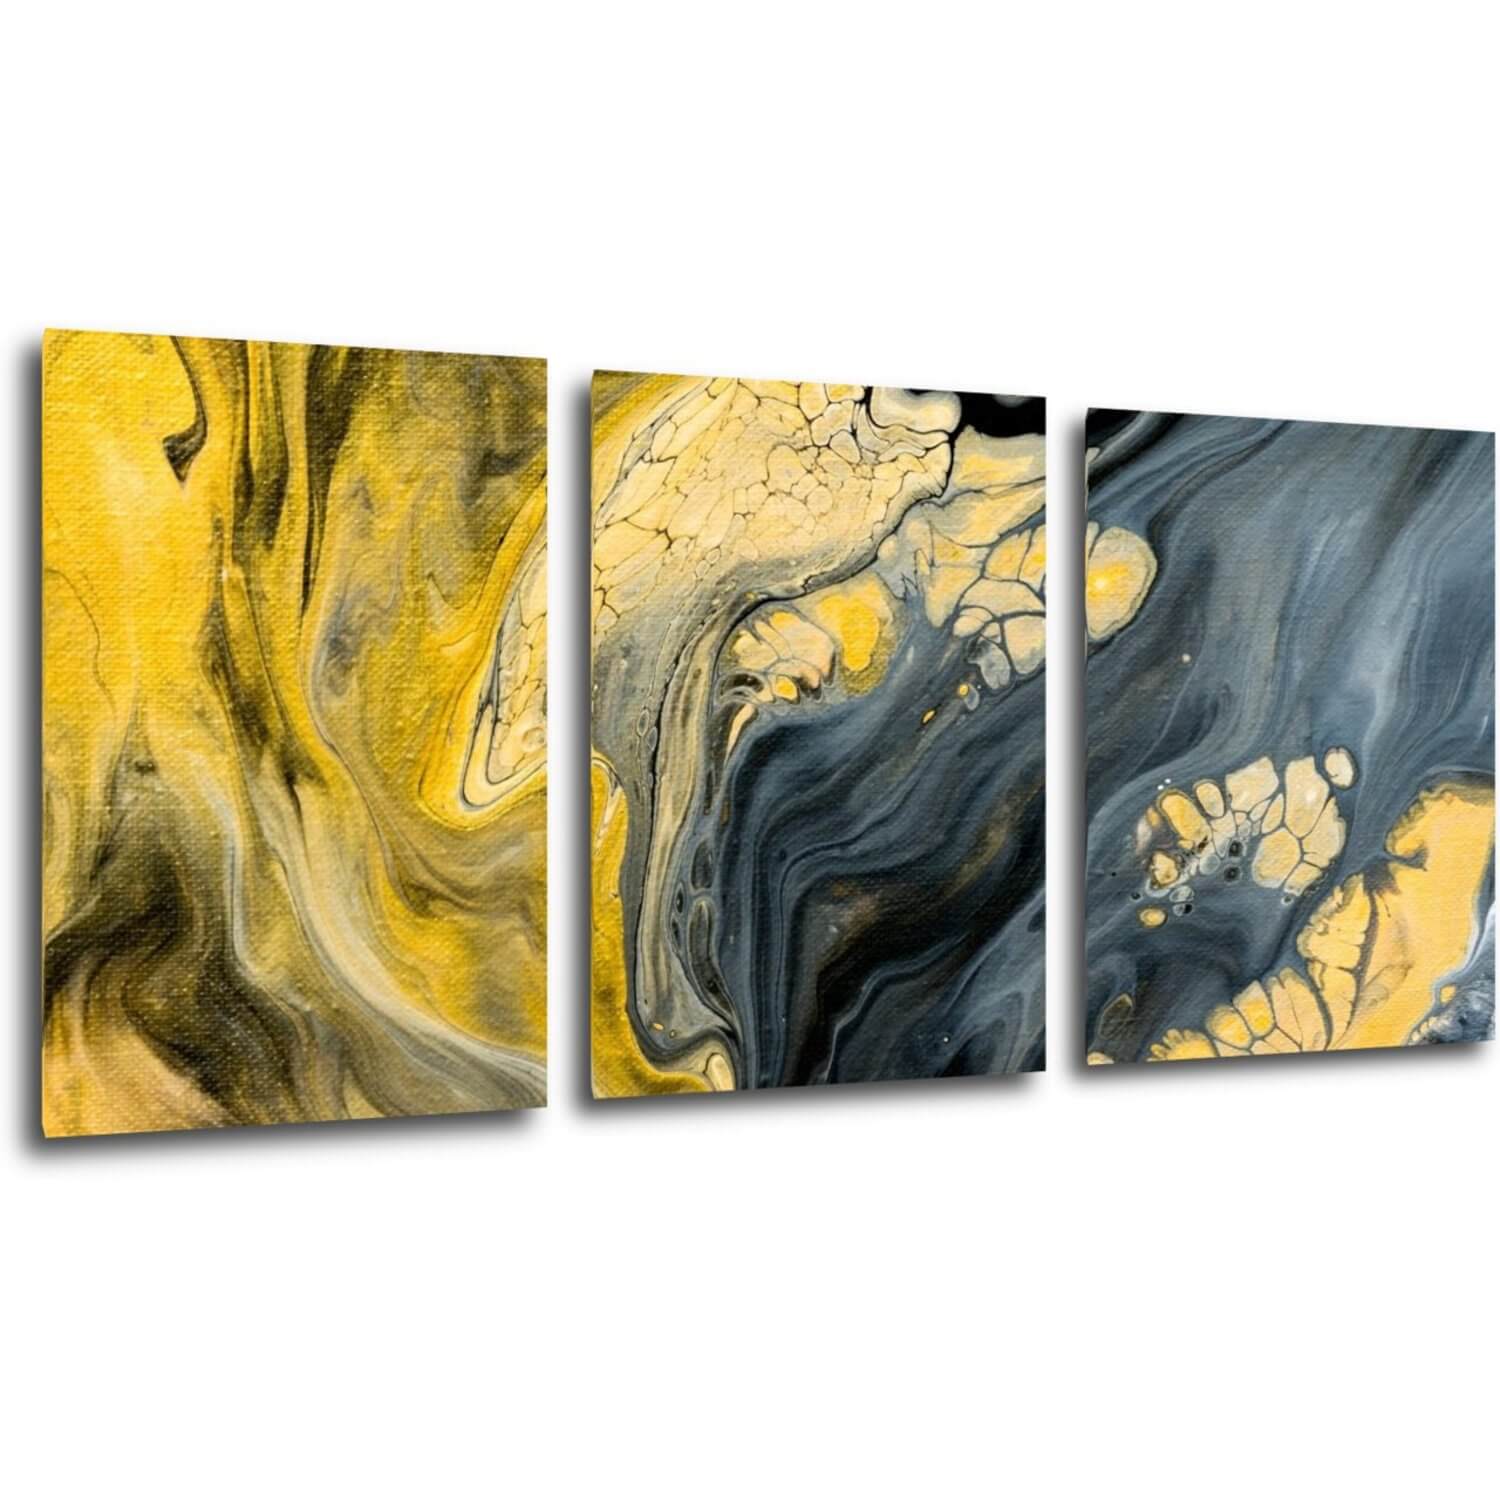 Obraz Abstraktný žlto sivý - 150 x 70 cm (3 dielny)